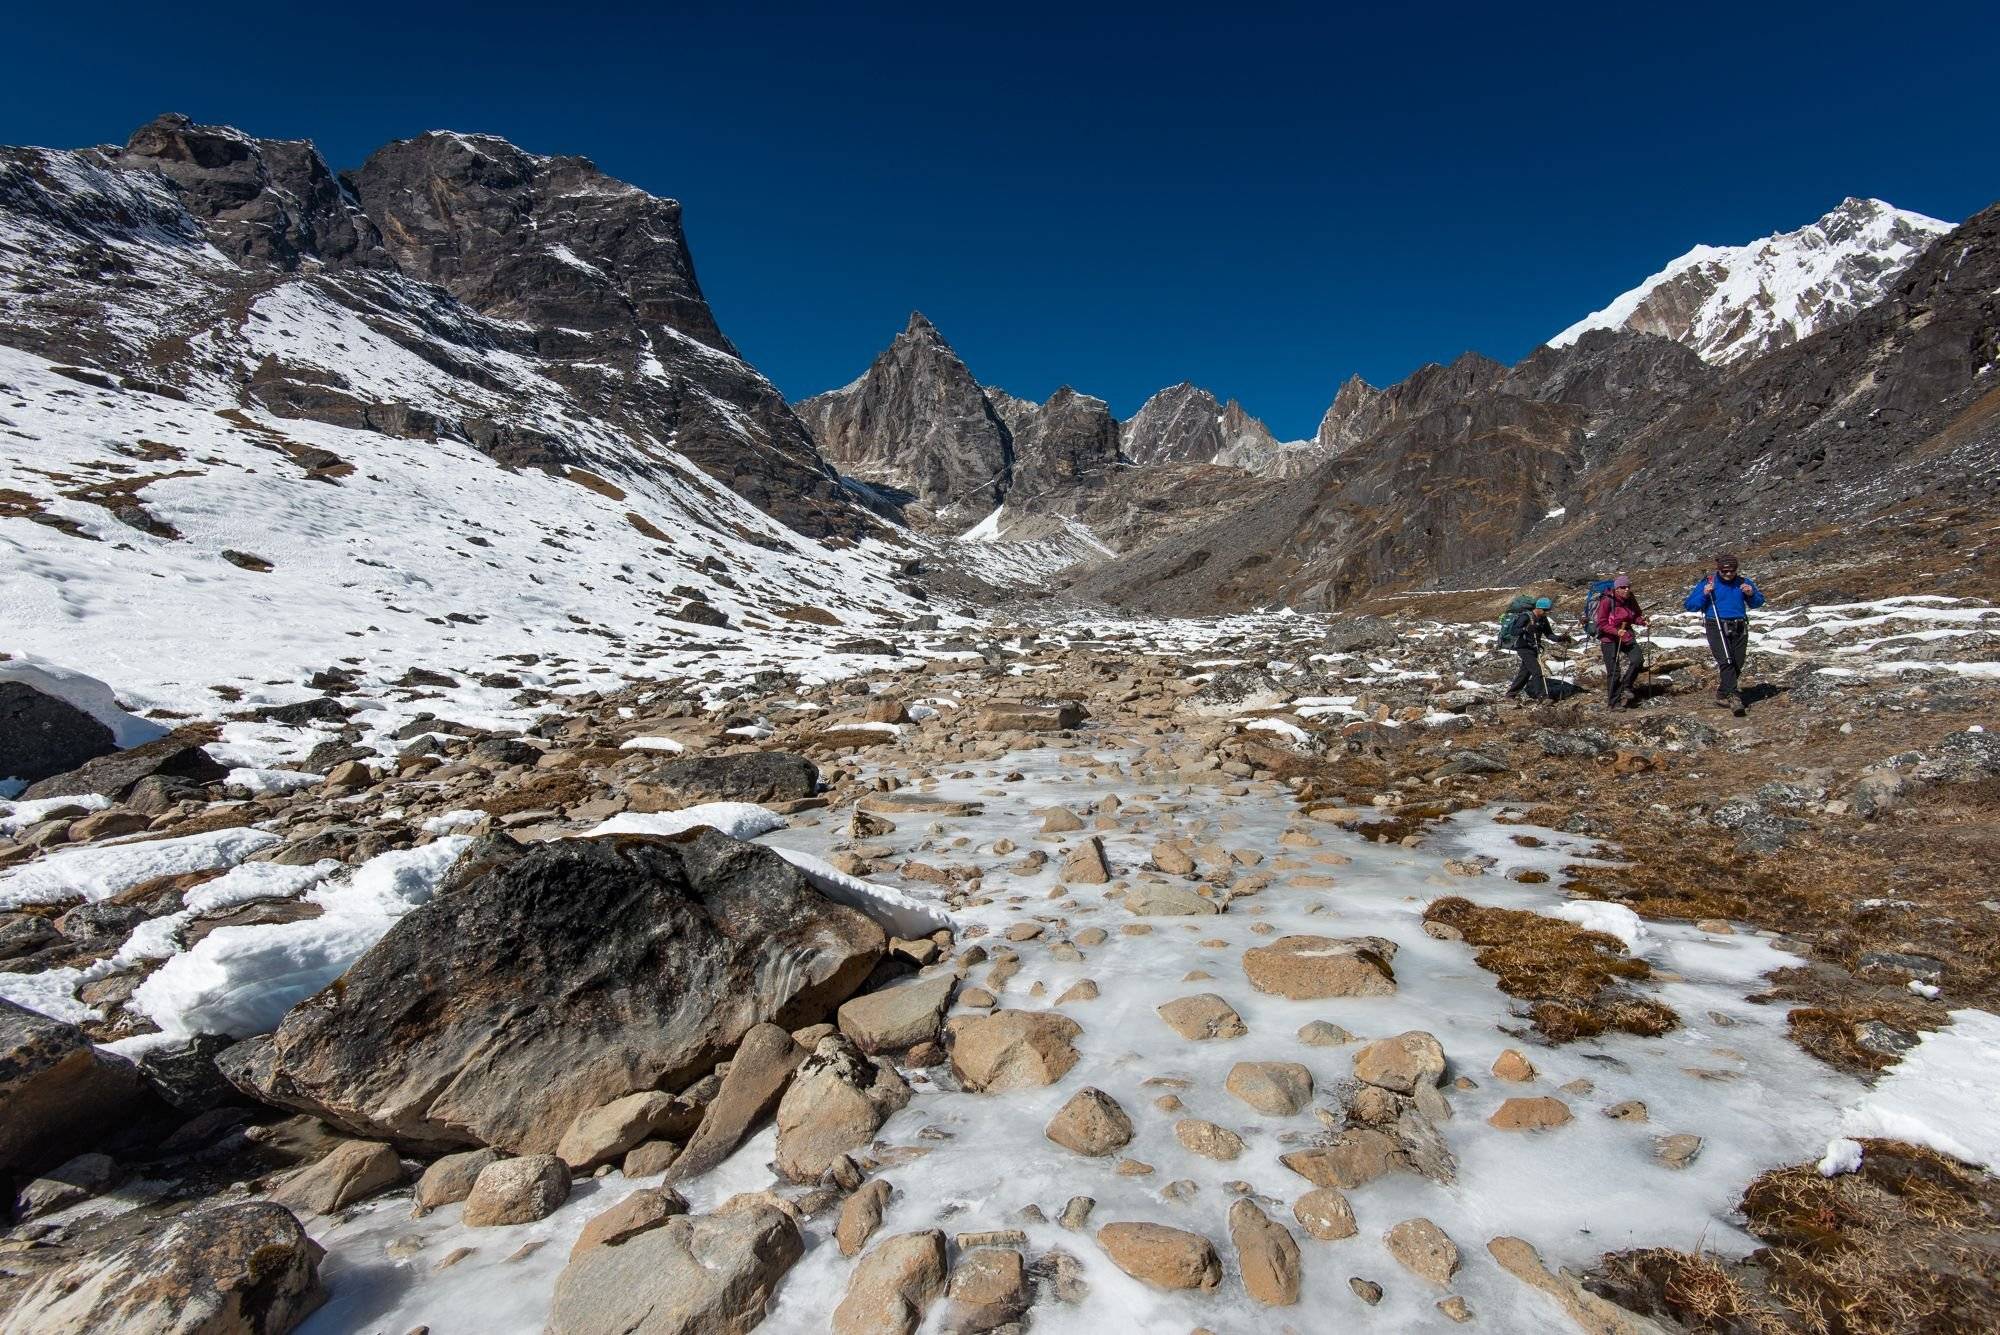 Über den von Eis verglasten Felsen bis zum Cho La Pass (5367 m) - 7 bis 8 Stunden Wanderung